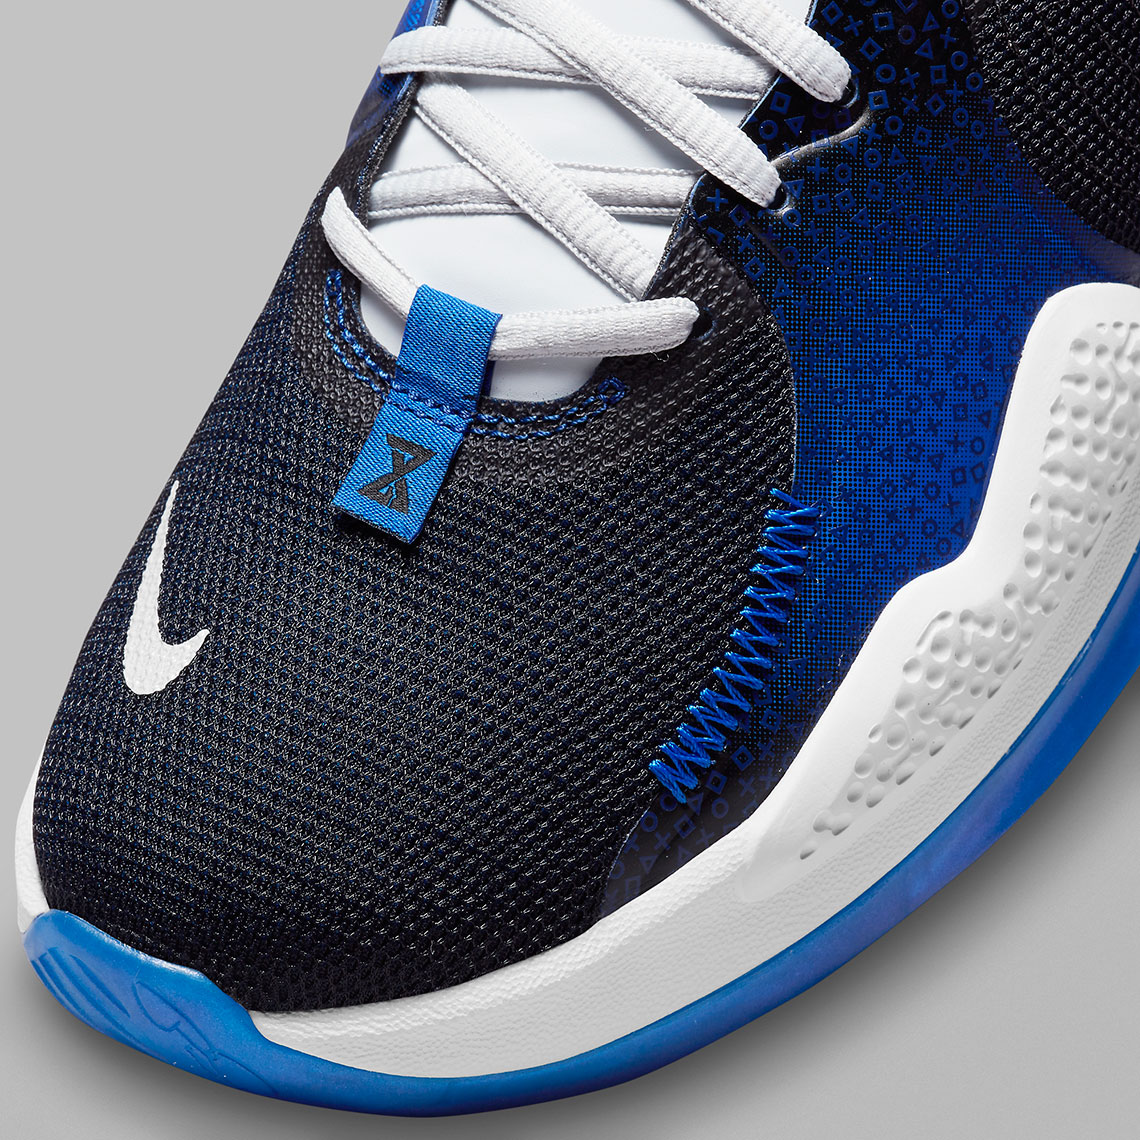 Playstation Nike Pg 5 Blue Cw3144 400 1